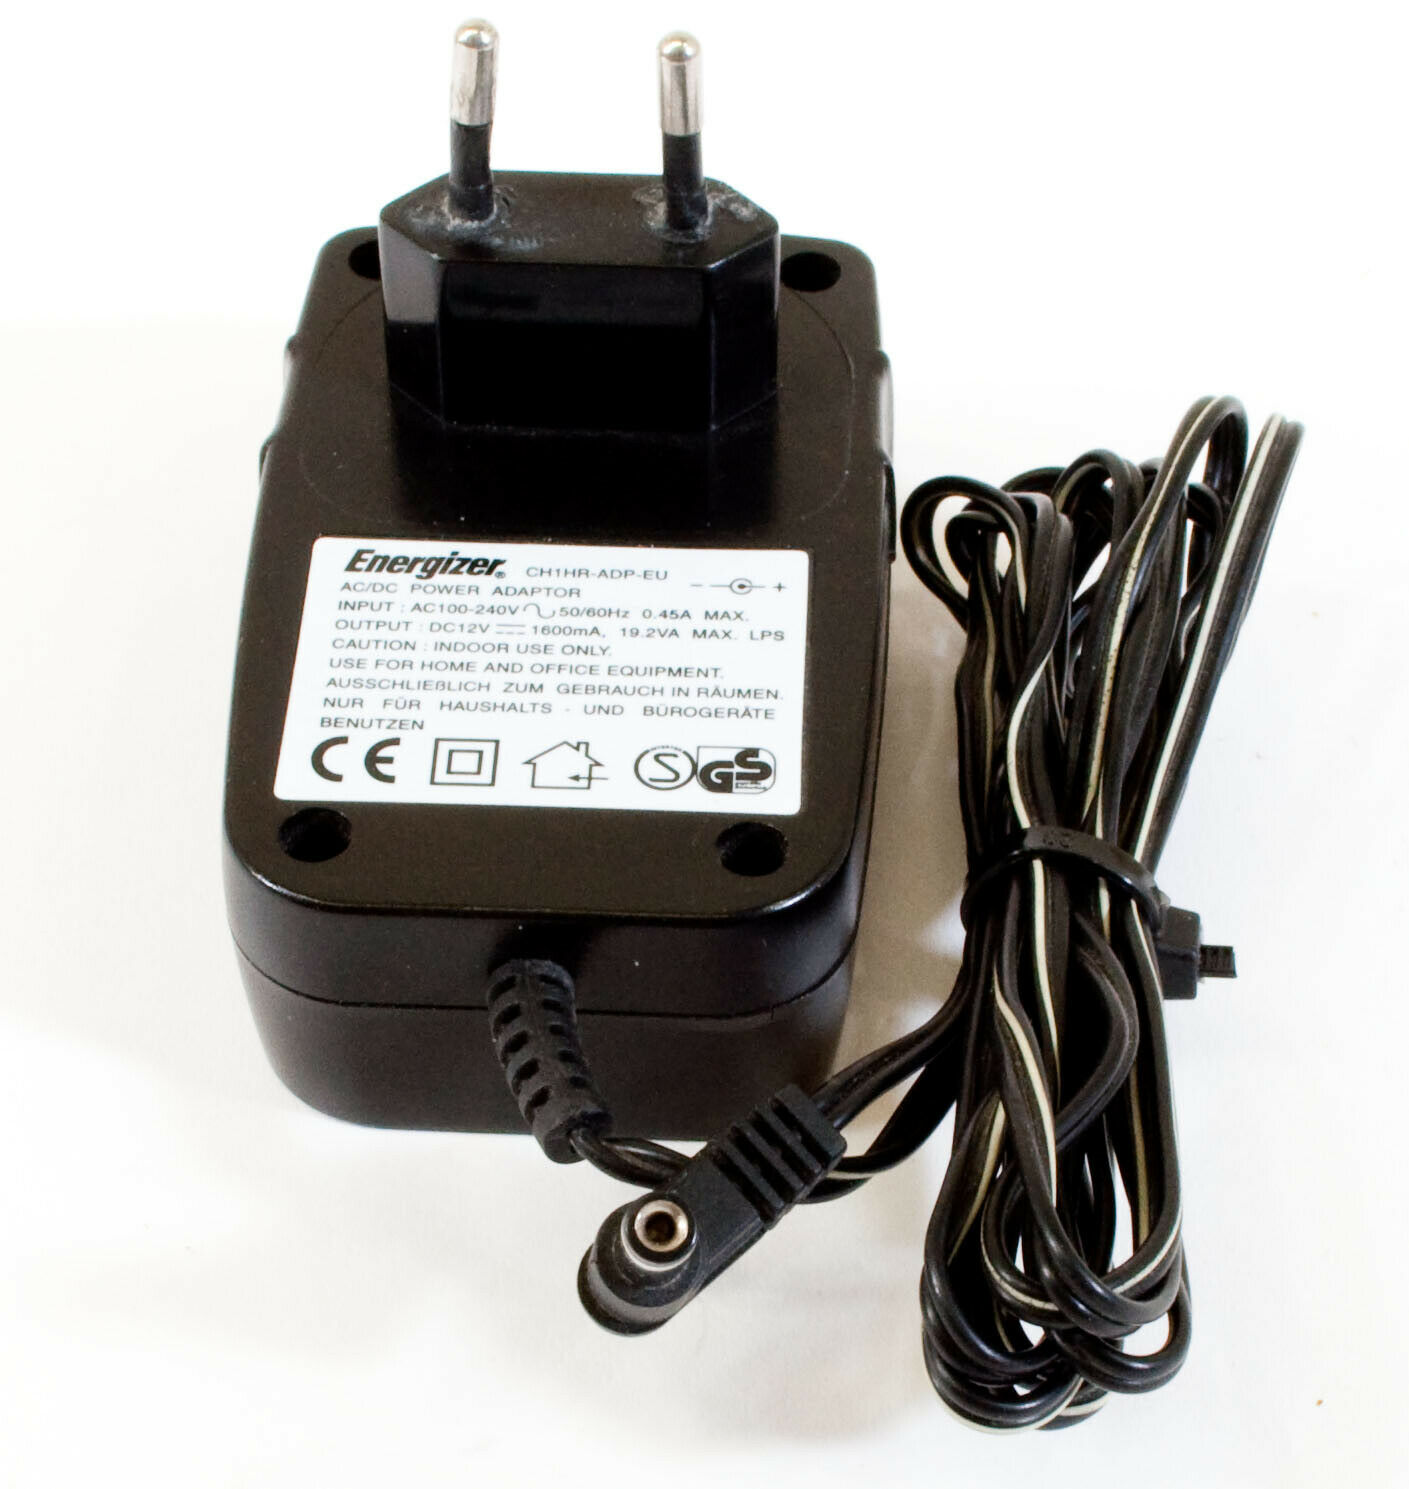 Energizer CH1HR-ADP-EU AC Adapter 12V 1600mA Original Power Supply Europlug Compatible Brand: For